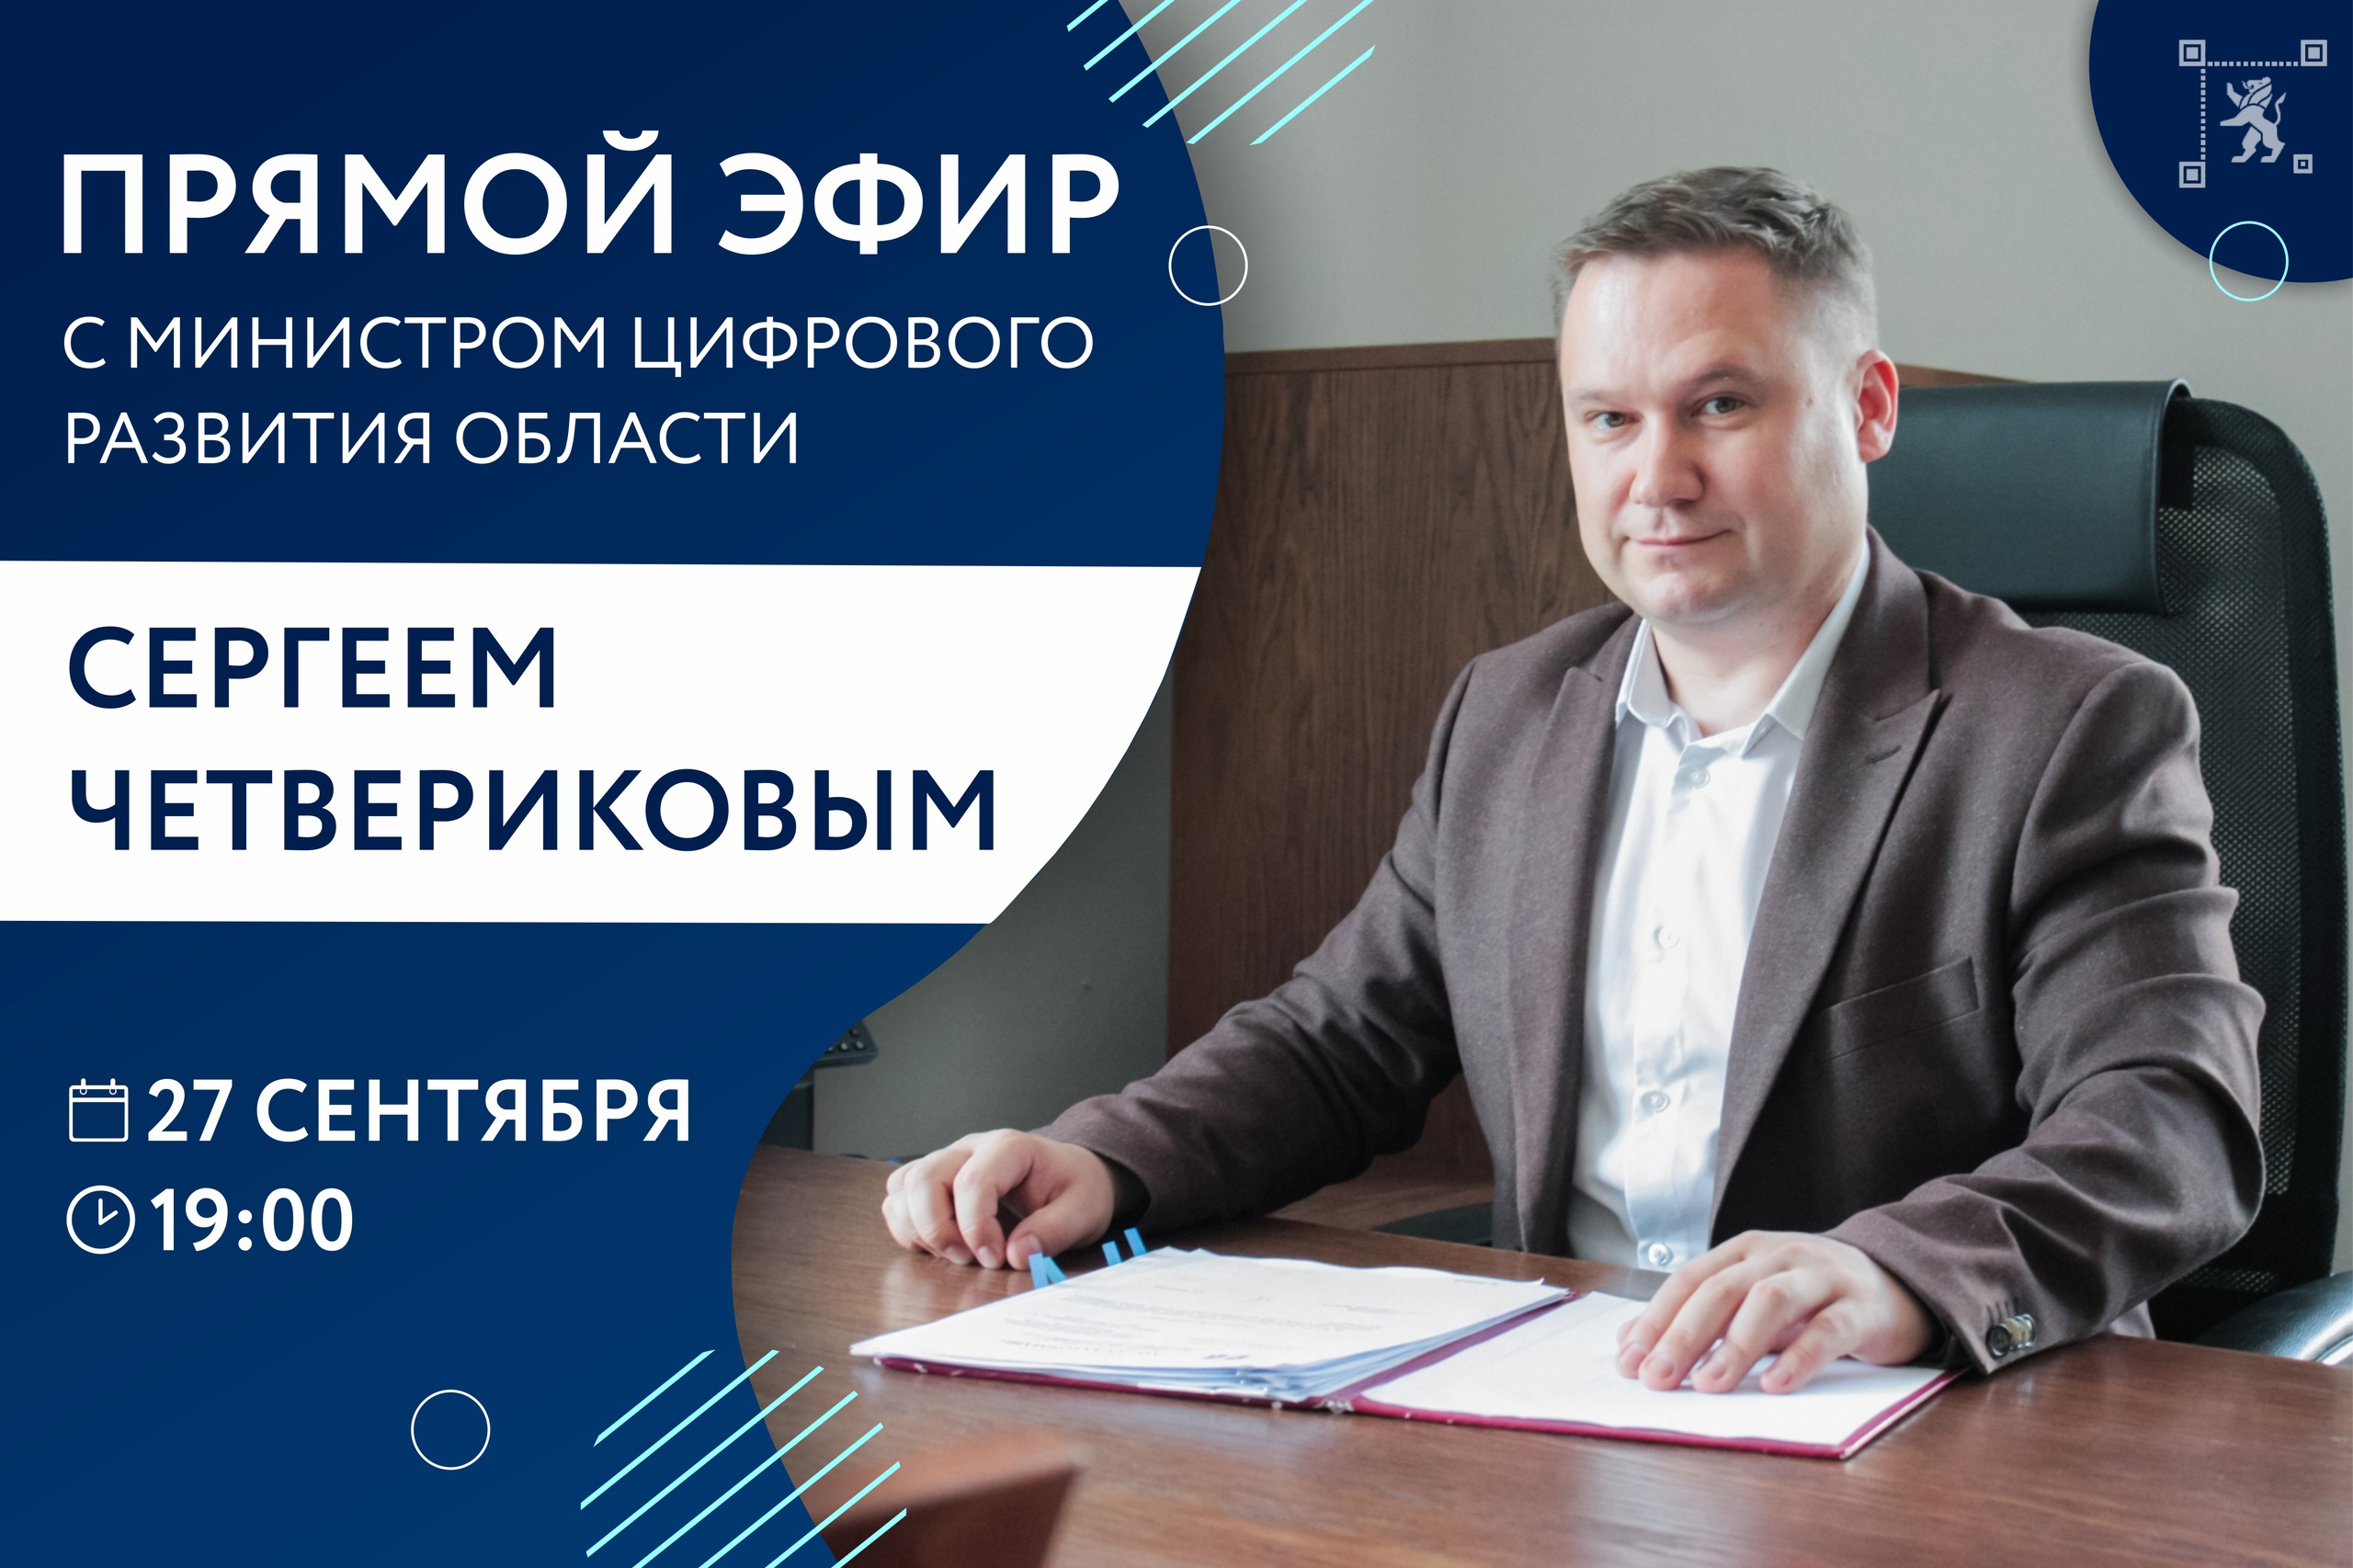 Сегодня в 19:00 министр цифрового развития региона Сергей Четвериков в прямом эфире ответит на вопросы жителей на своей странице в режиме реального времени..